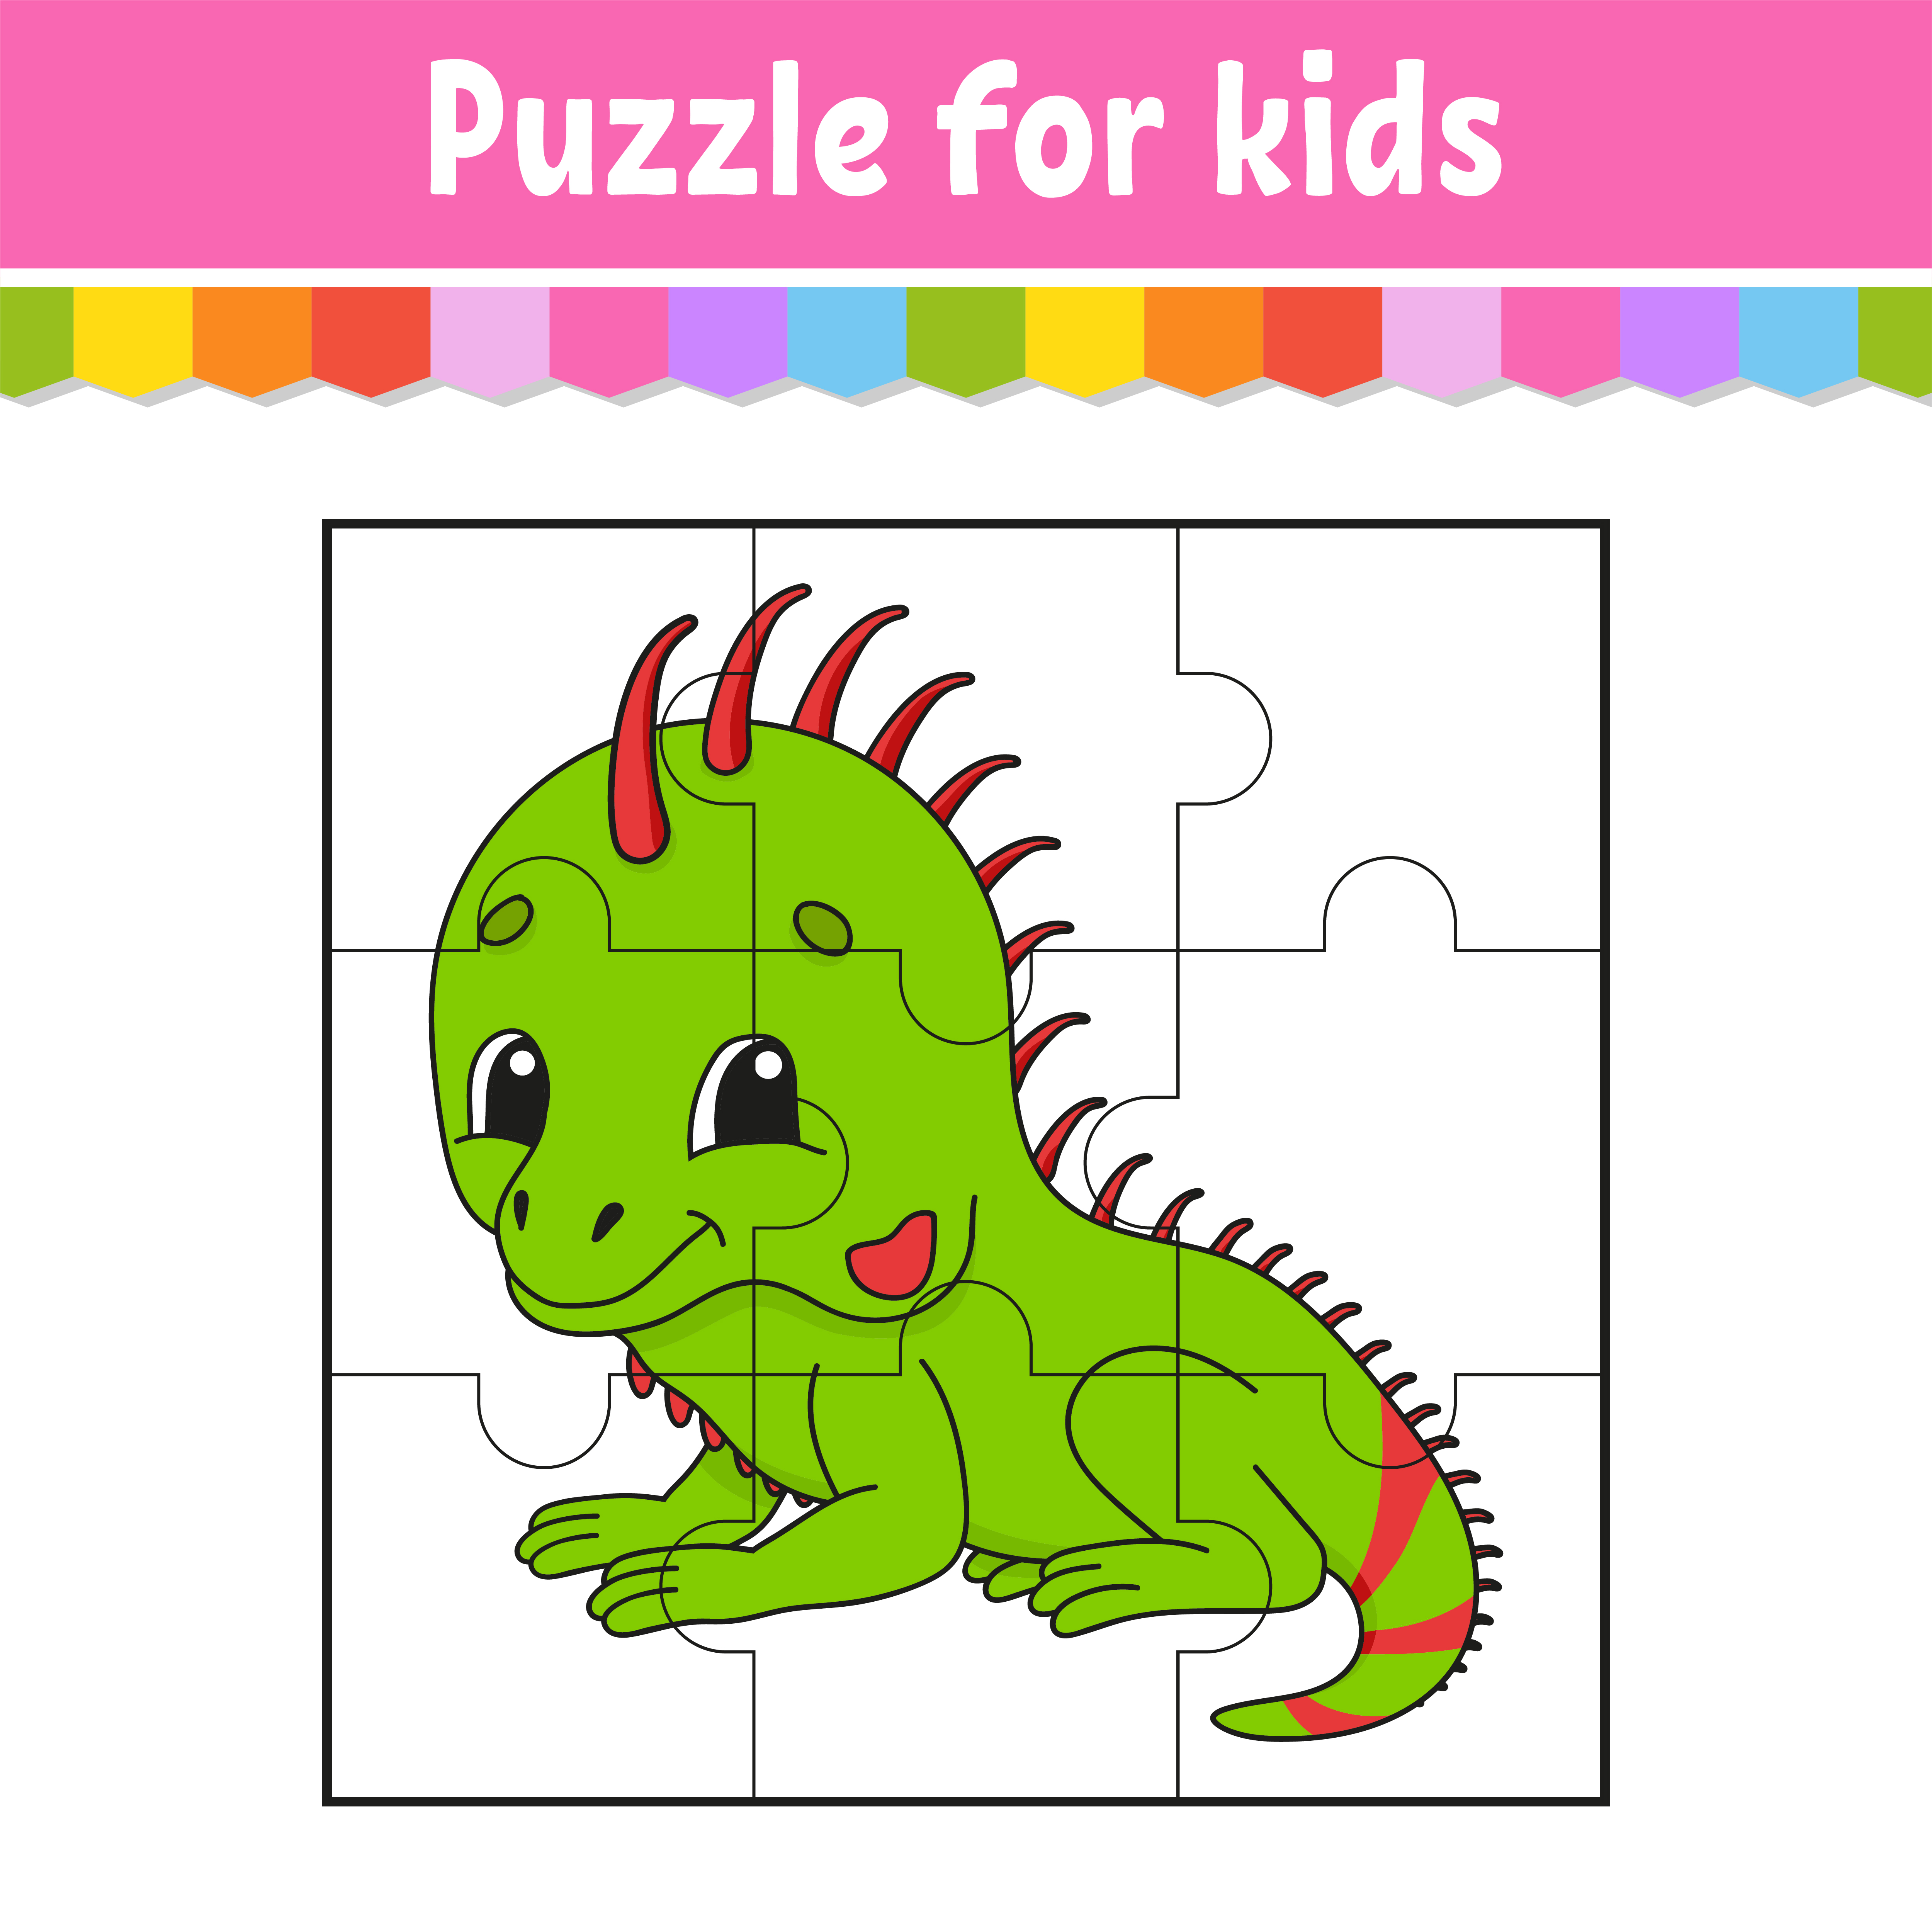 123 puzzles - Jogo 123 puzzles grátis